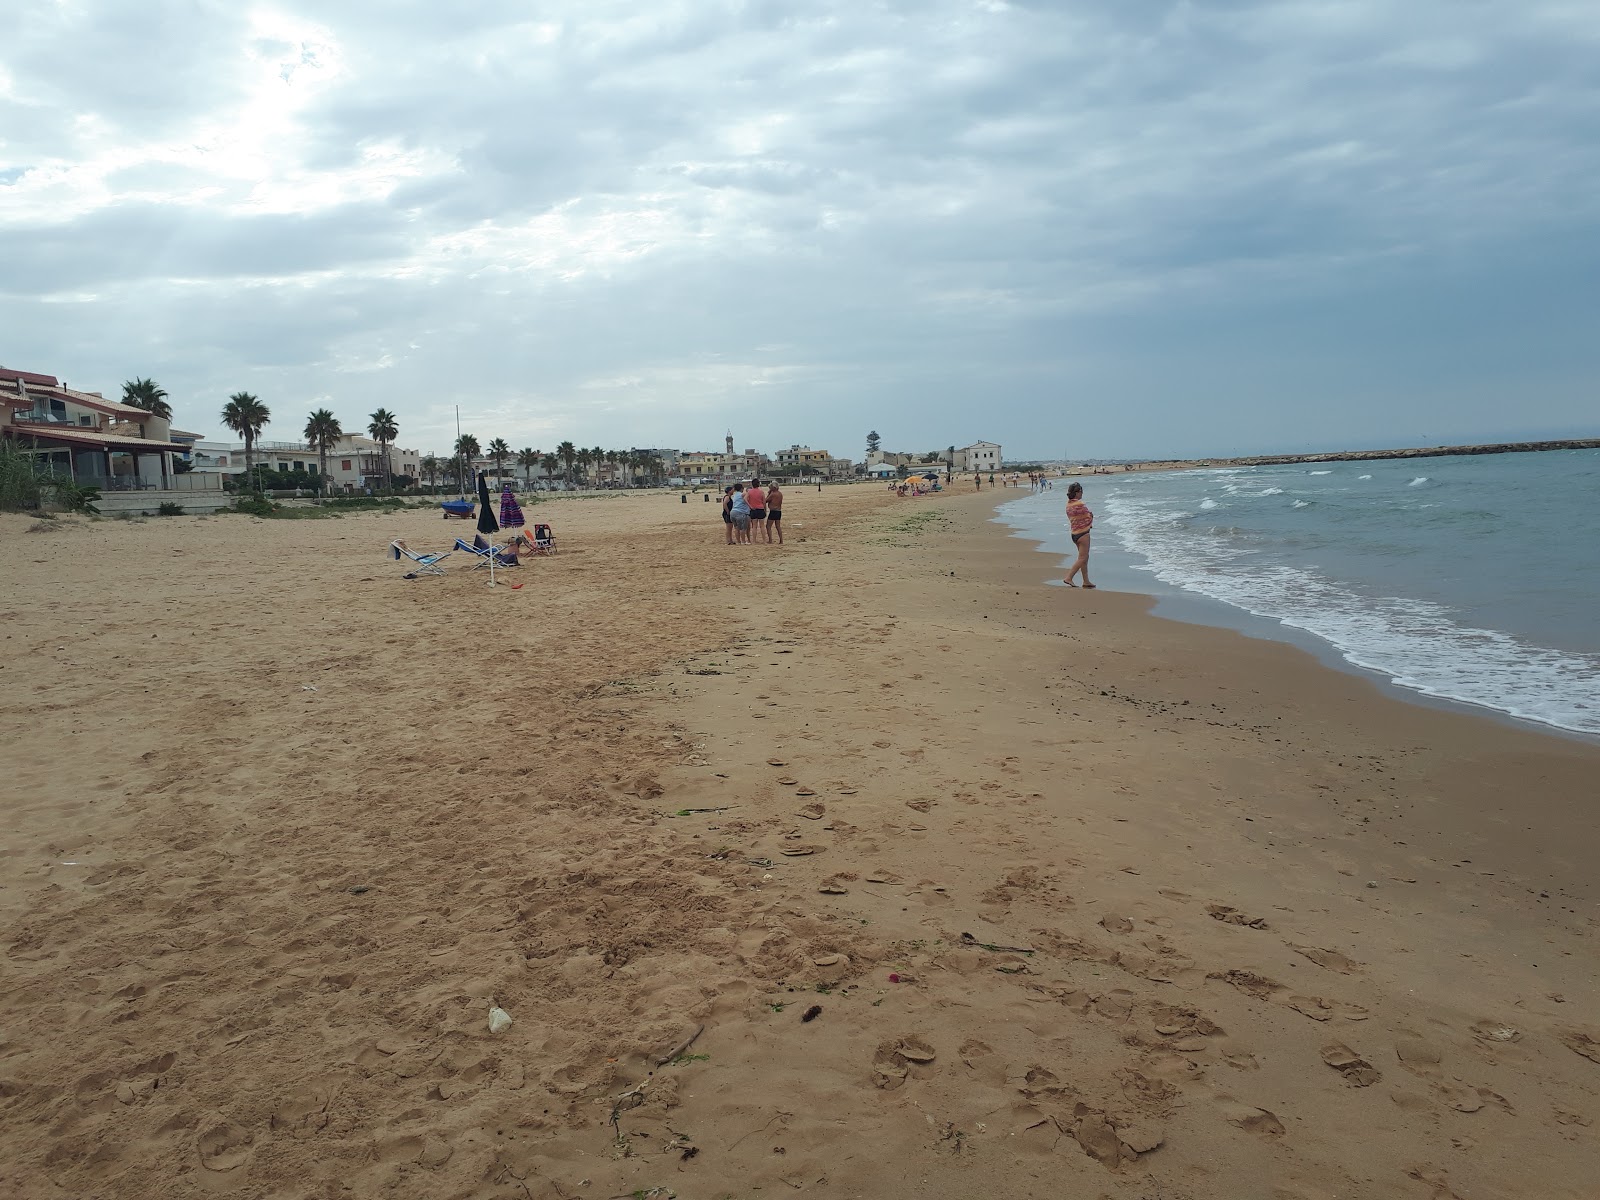 Donnalucata beach'in fotoğrafı geniş ile birlikte